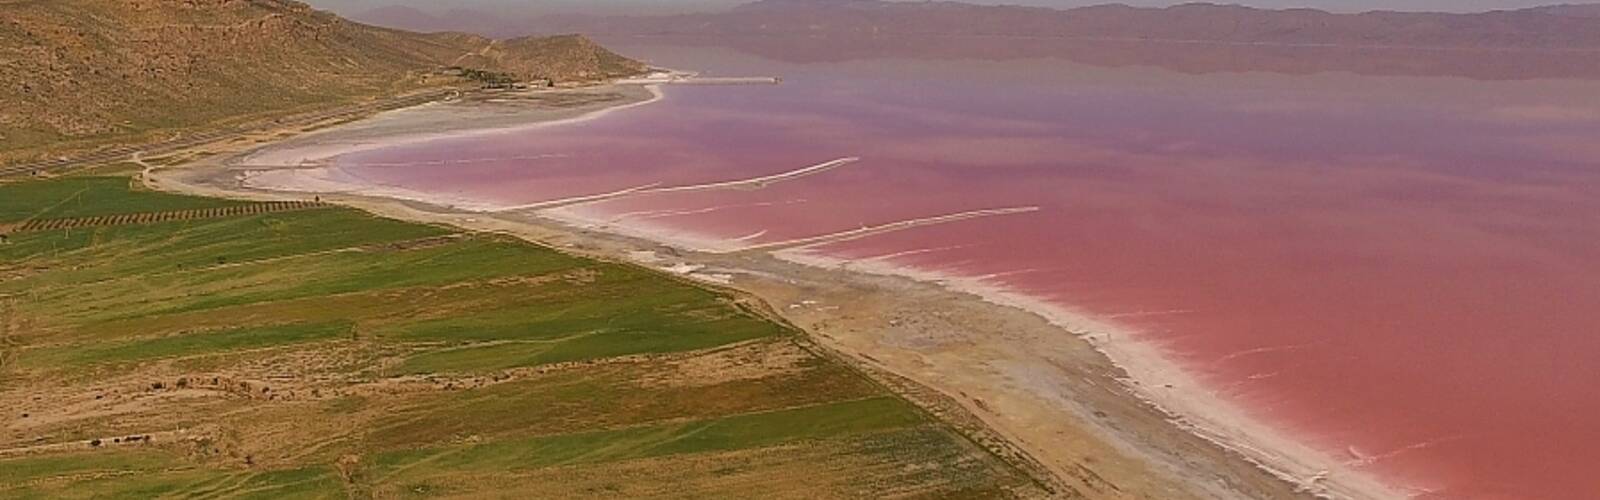 البحيرة الحمراء في إيران